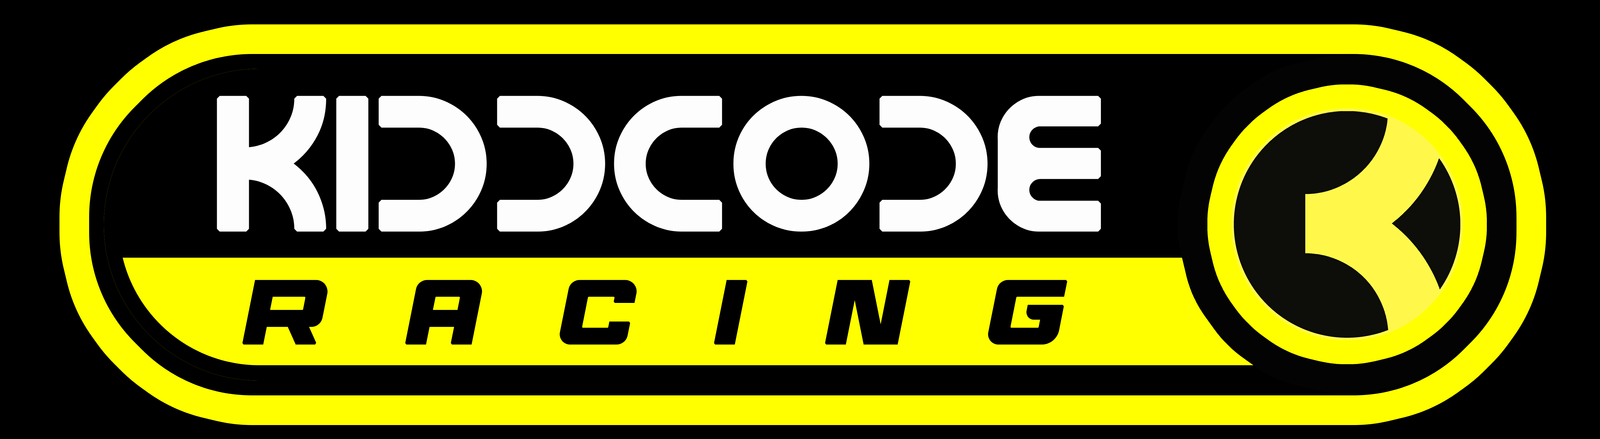 Kiddcode Racing